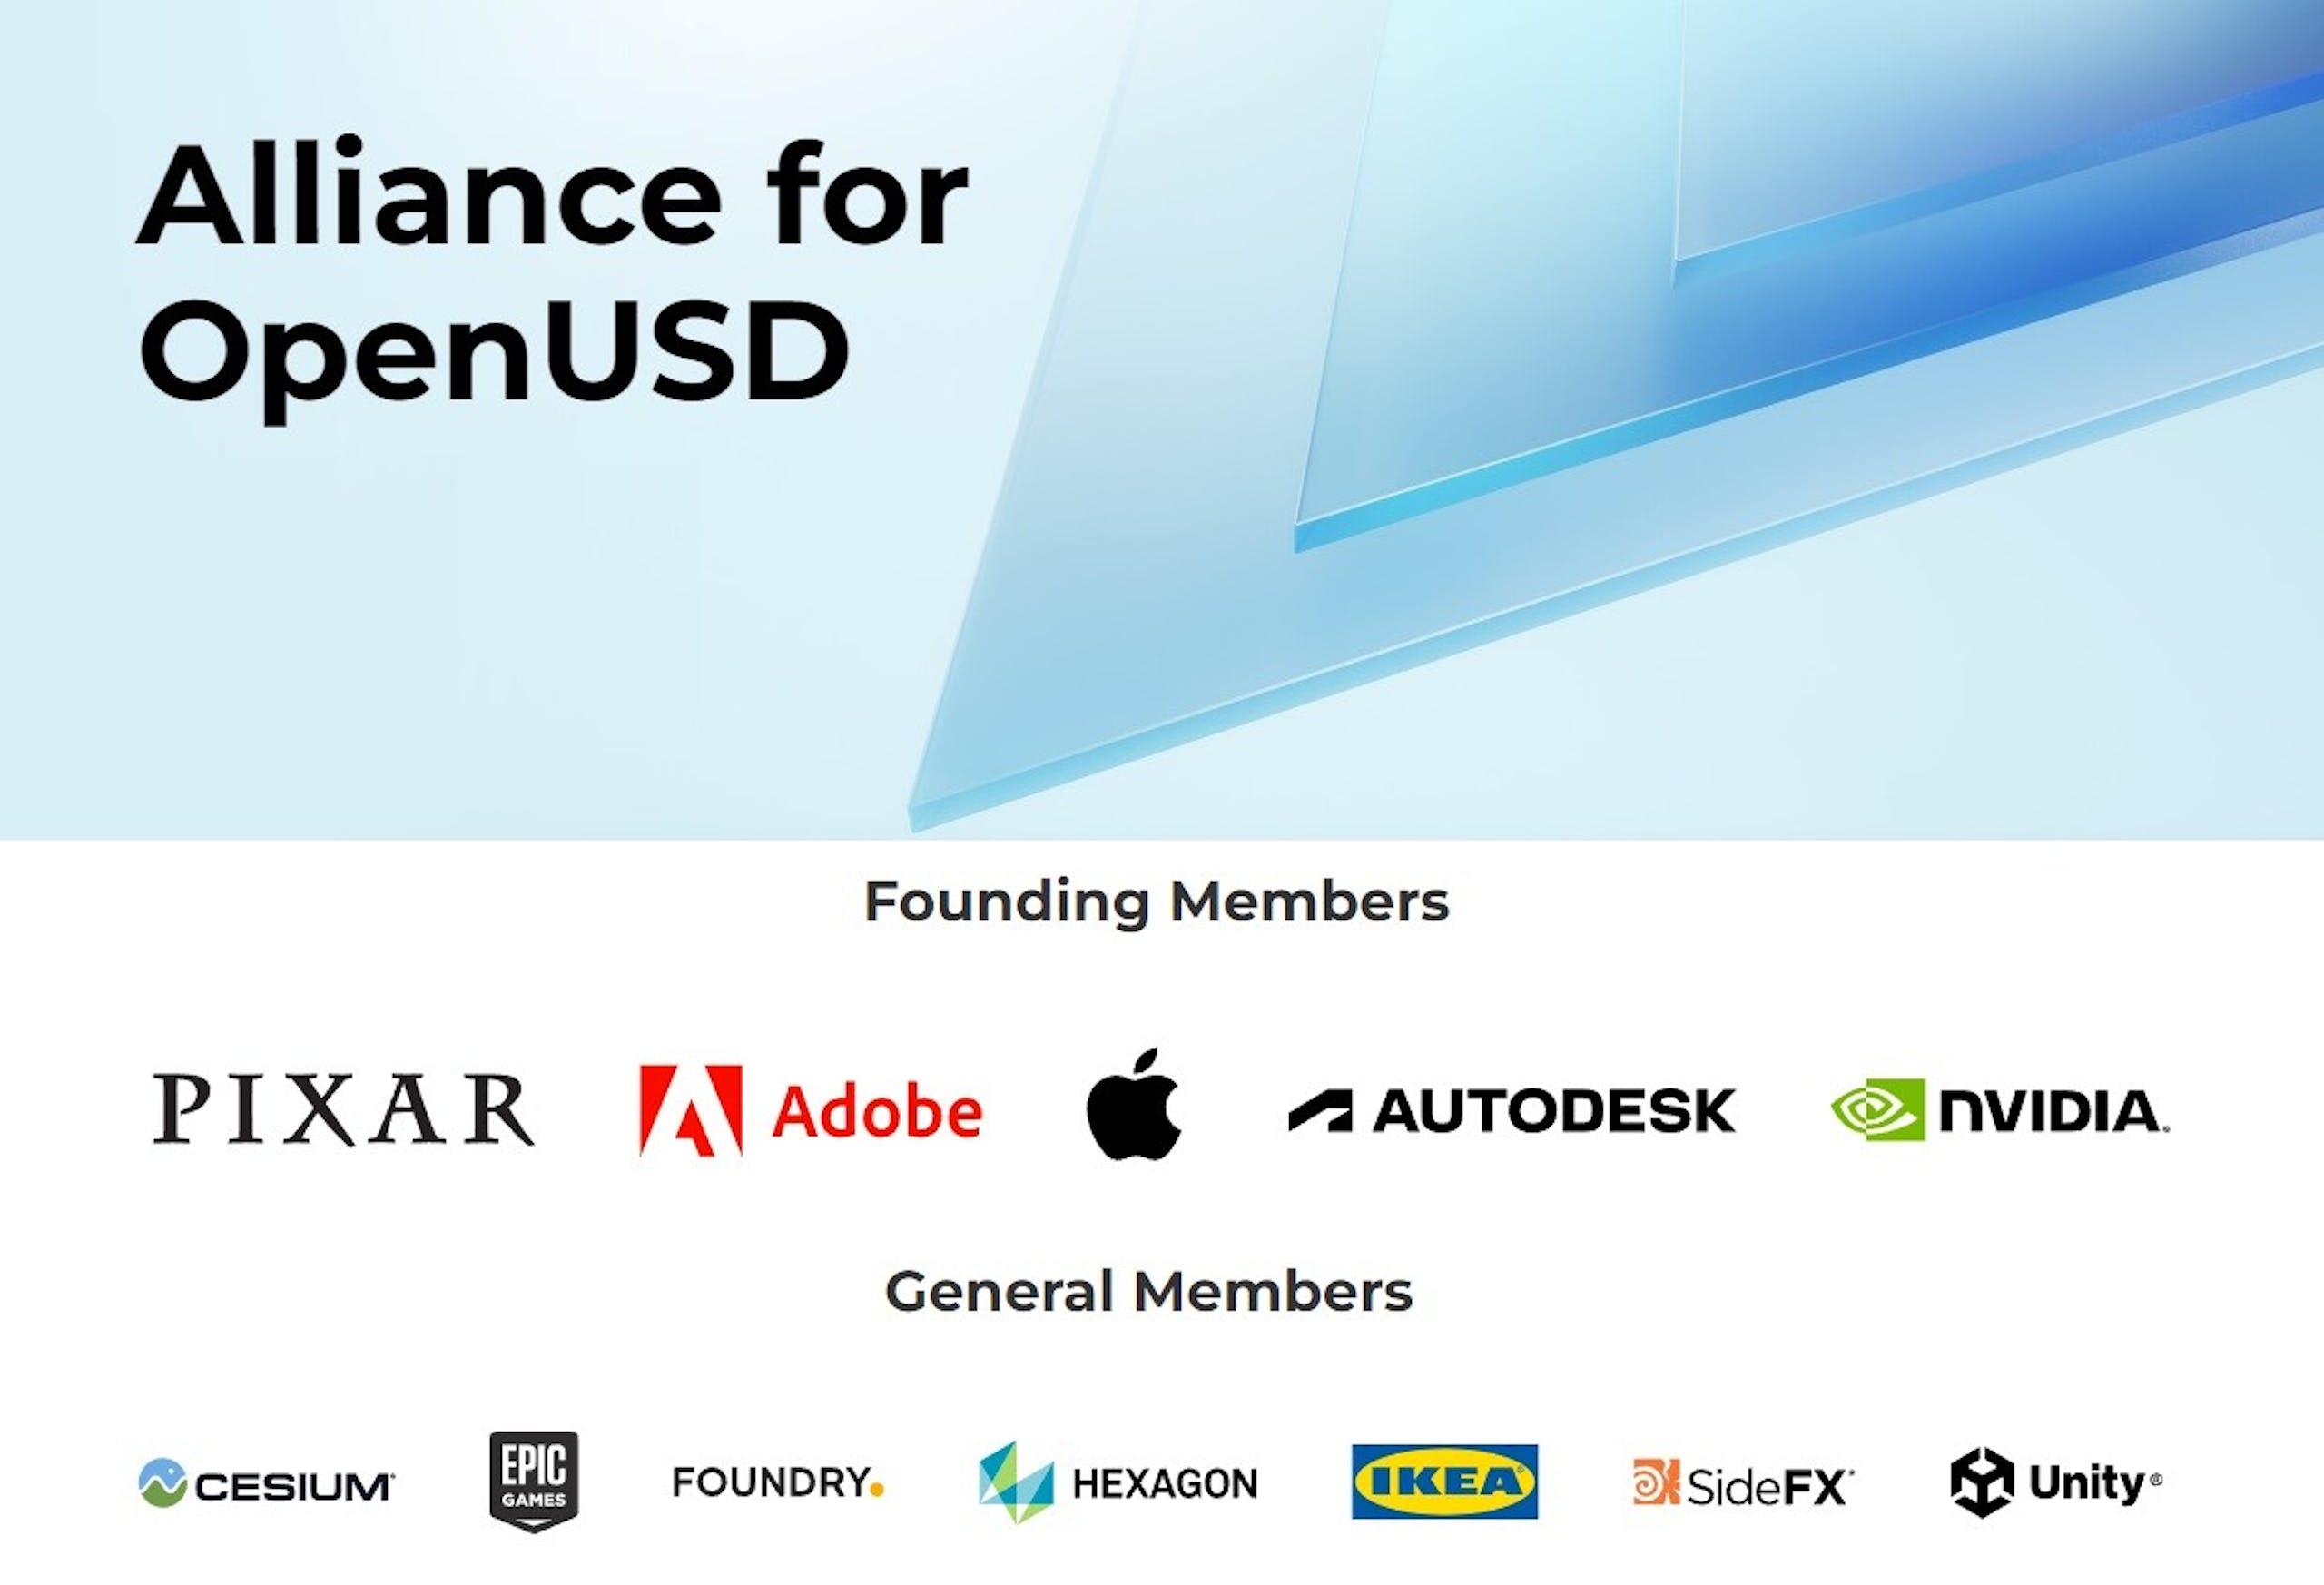 照片中提到了Alliance for、OpenUSD、PIXAR A Adobe，跟宜家、六角公司有關，包含了玩具總動員3、產品設計、產品、牌、設計